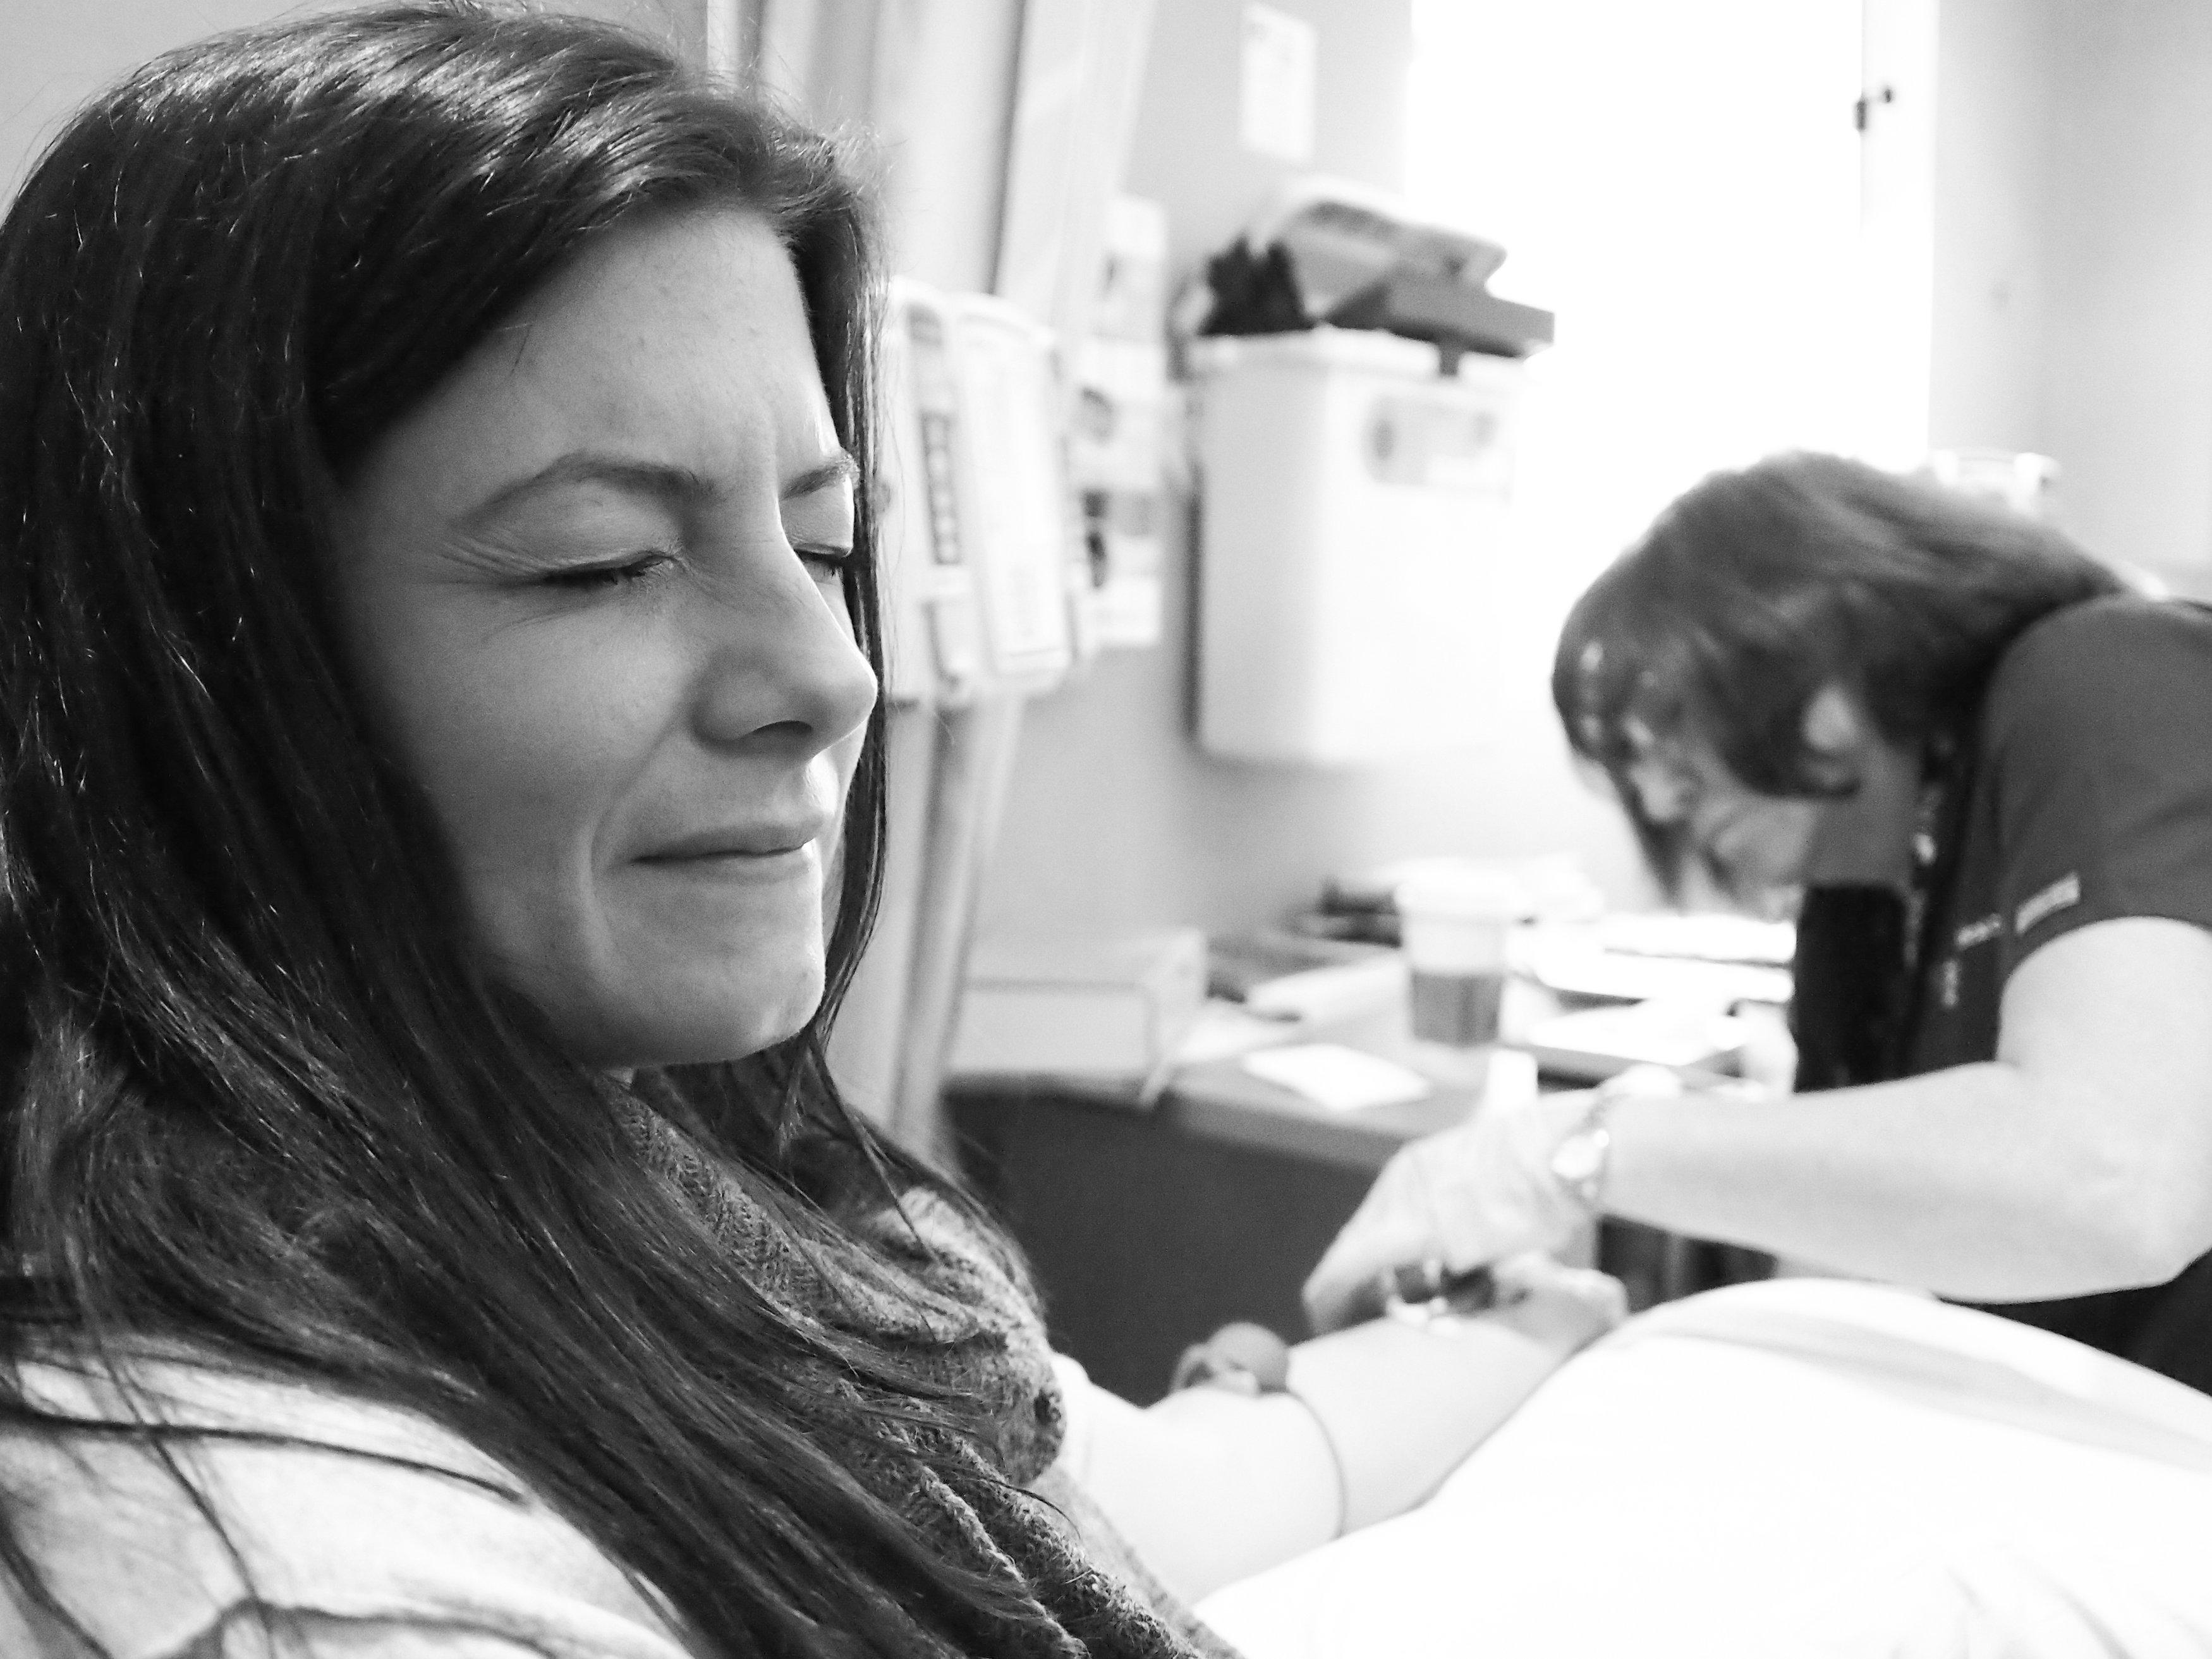 Lauren Truelock starts chemotherapy. (Sidne Hirsch Photography)